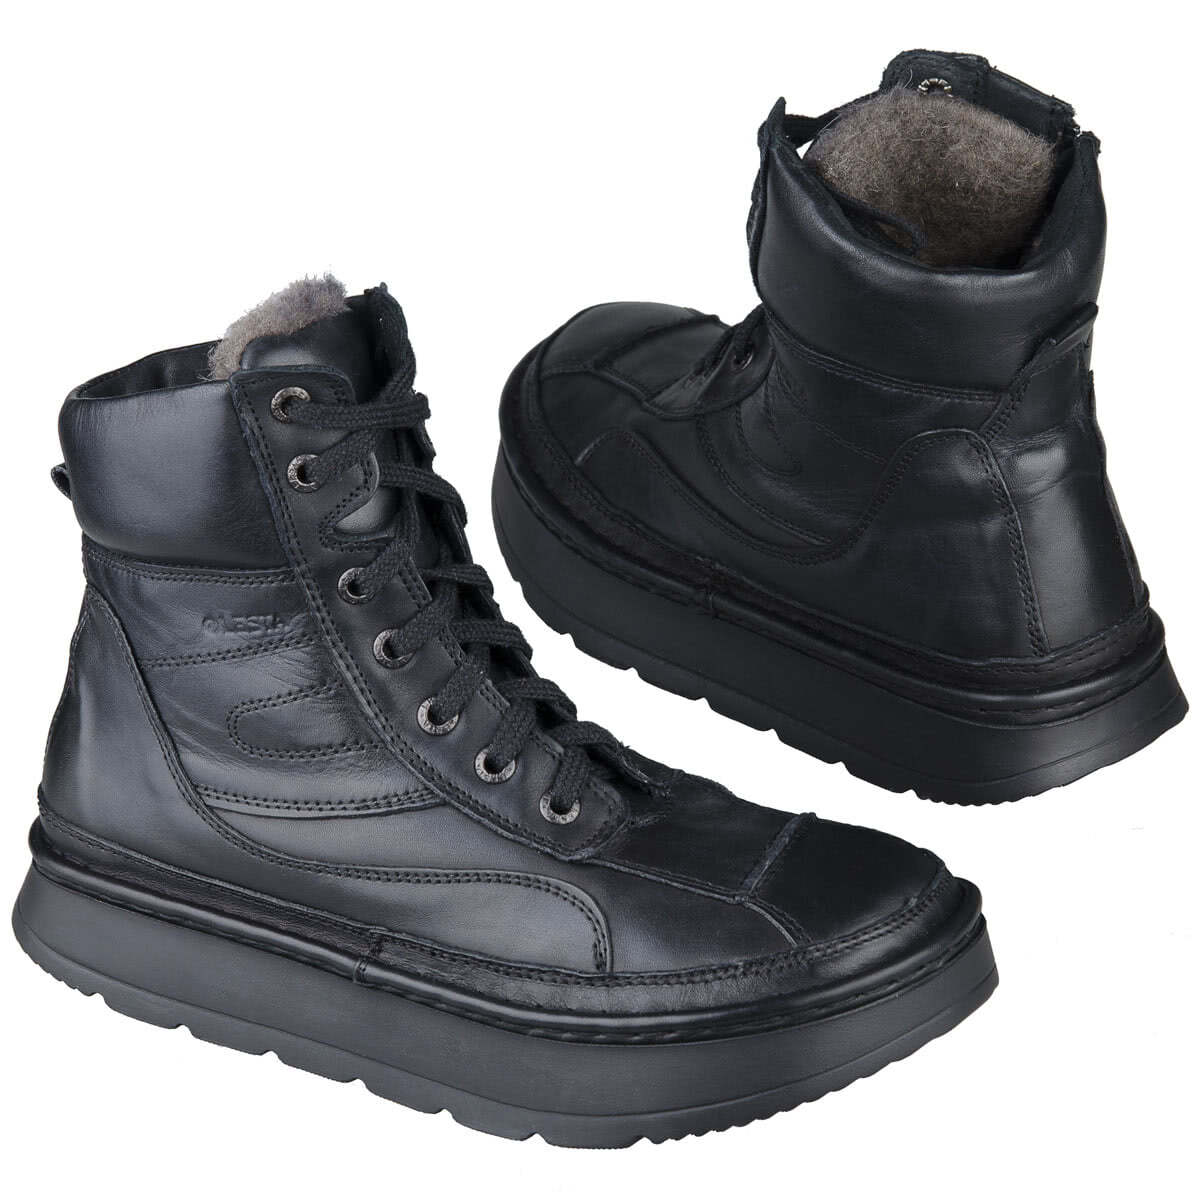 Черные высокие зимние ботинки из натуральной кожи на шерсти купить винтернет магазине Kwinto